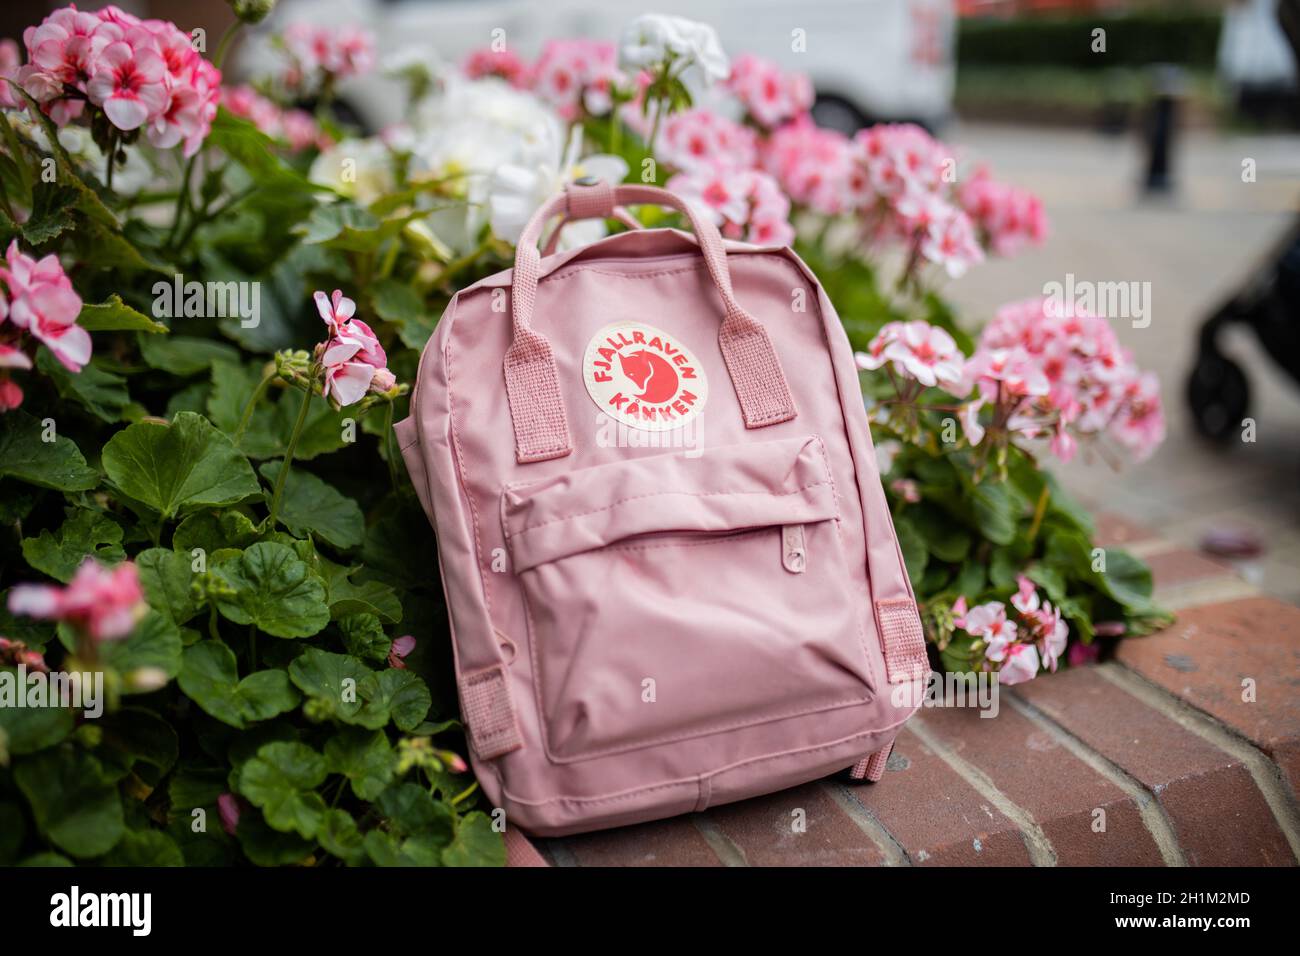 Londres, Royaume-Uni - 4 novembre 2020 : sac à dos Fjallraven rose sur jardinière en briques avec plantes et fleurs roses.Sac à dos rose et fleurs colorées sur briques pl Banque D'Images